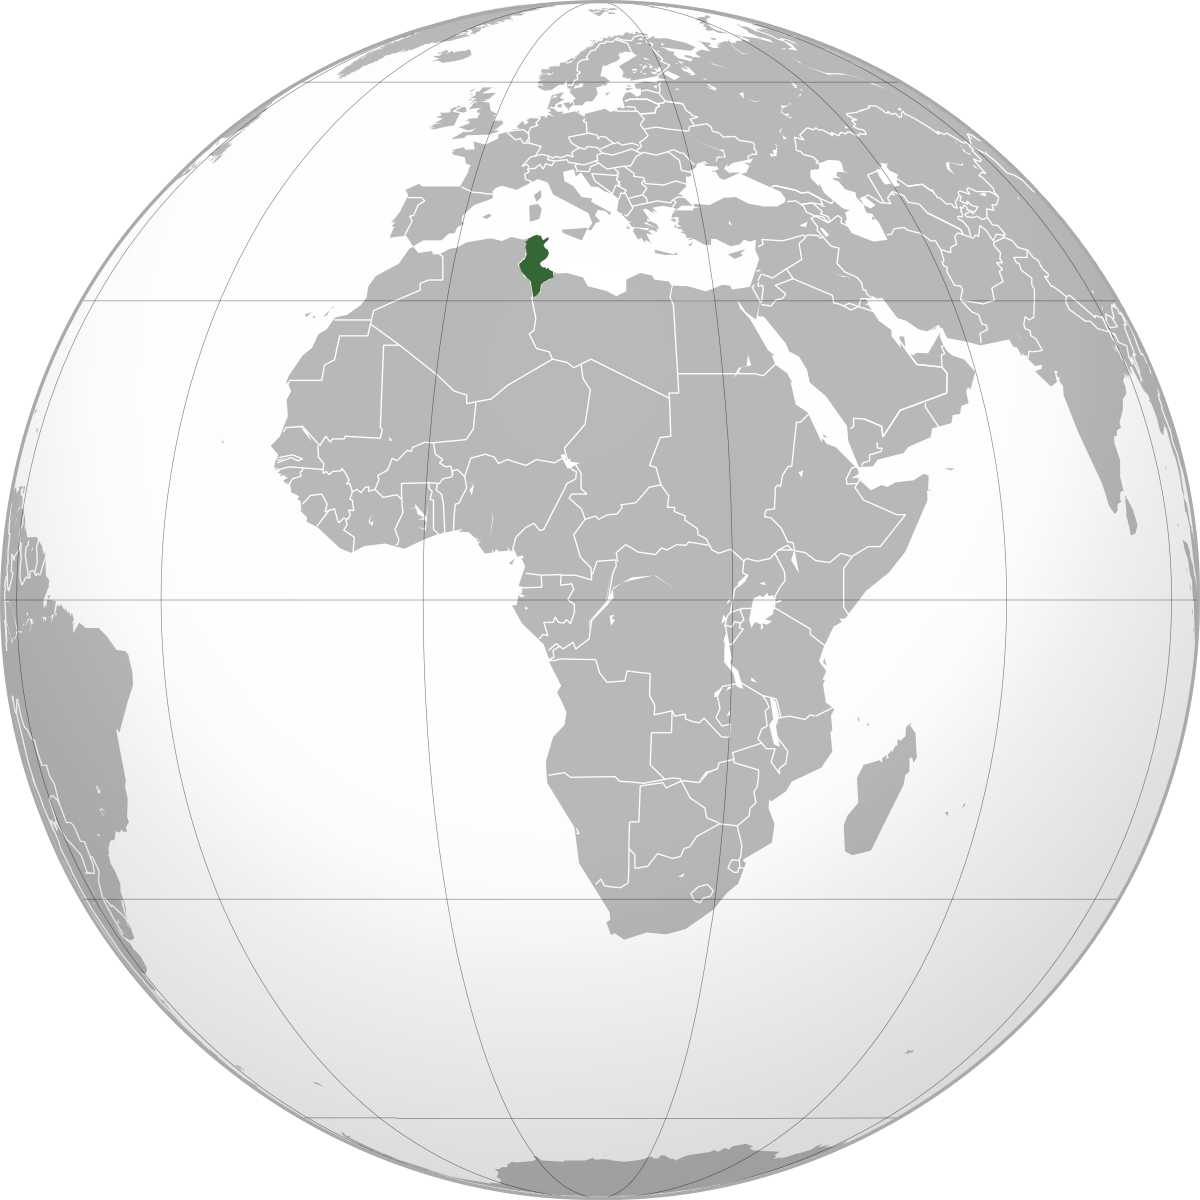 tunisie carte du monde